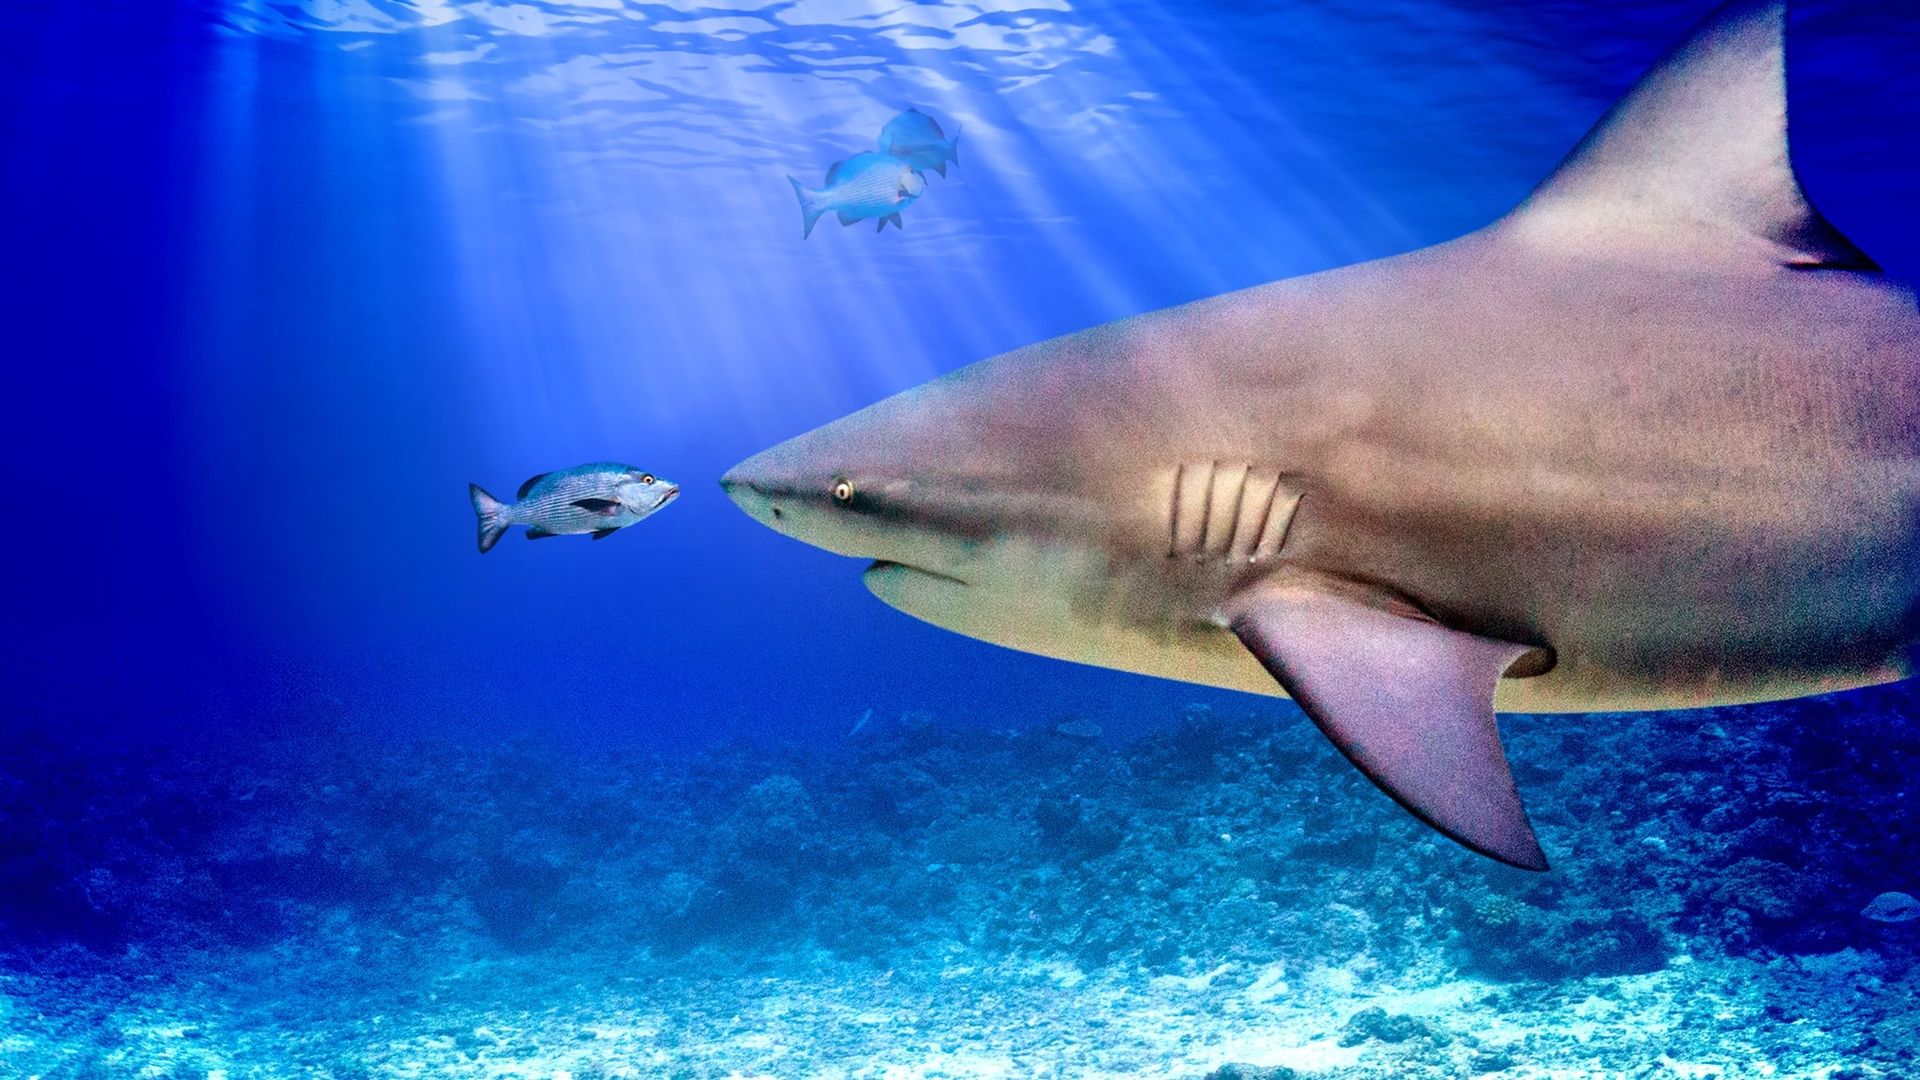 World's Biggest Bull Shark background